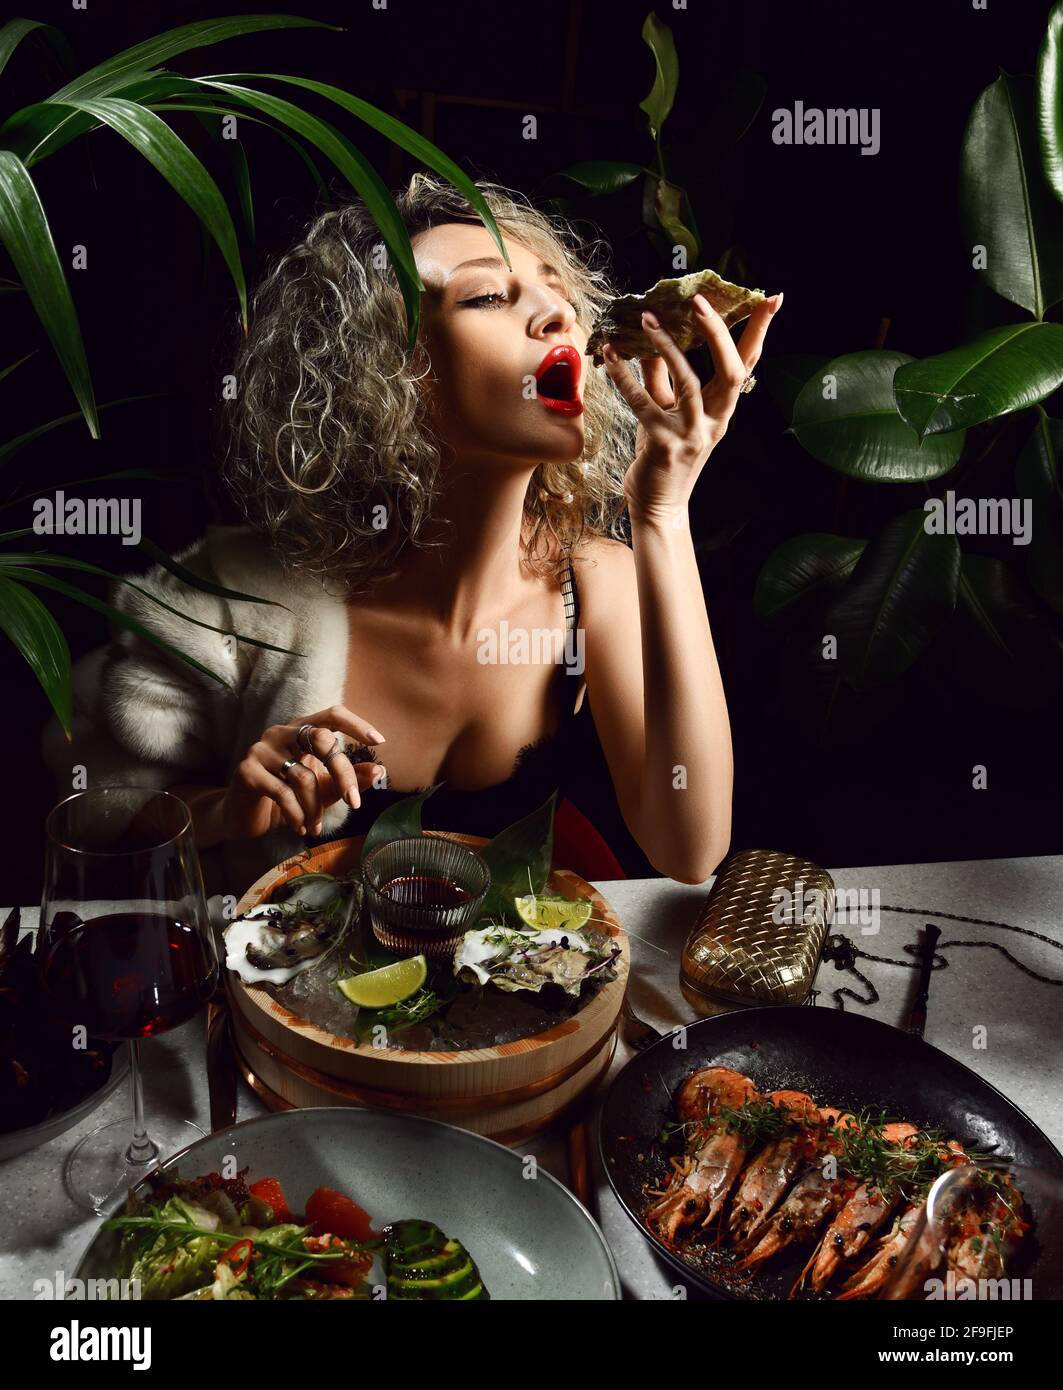 Die junge blonde Frau im Abendkleid mit tiefem Ausschnitt isst im Restaurant Meeresfrüchte-Austern, Garnelen, Muscheln und Salat Stockfoto